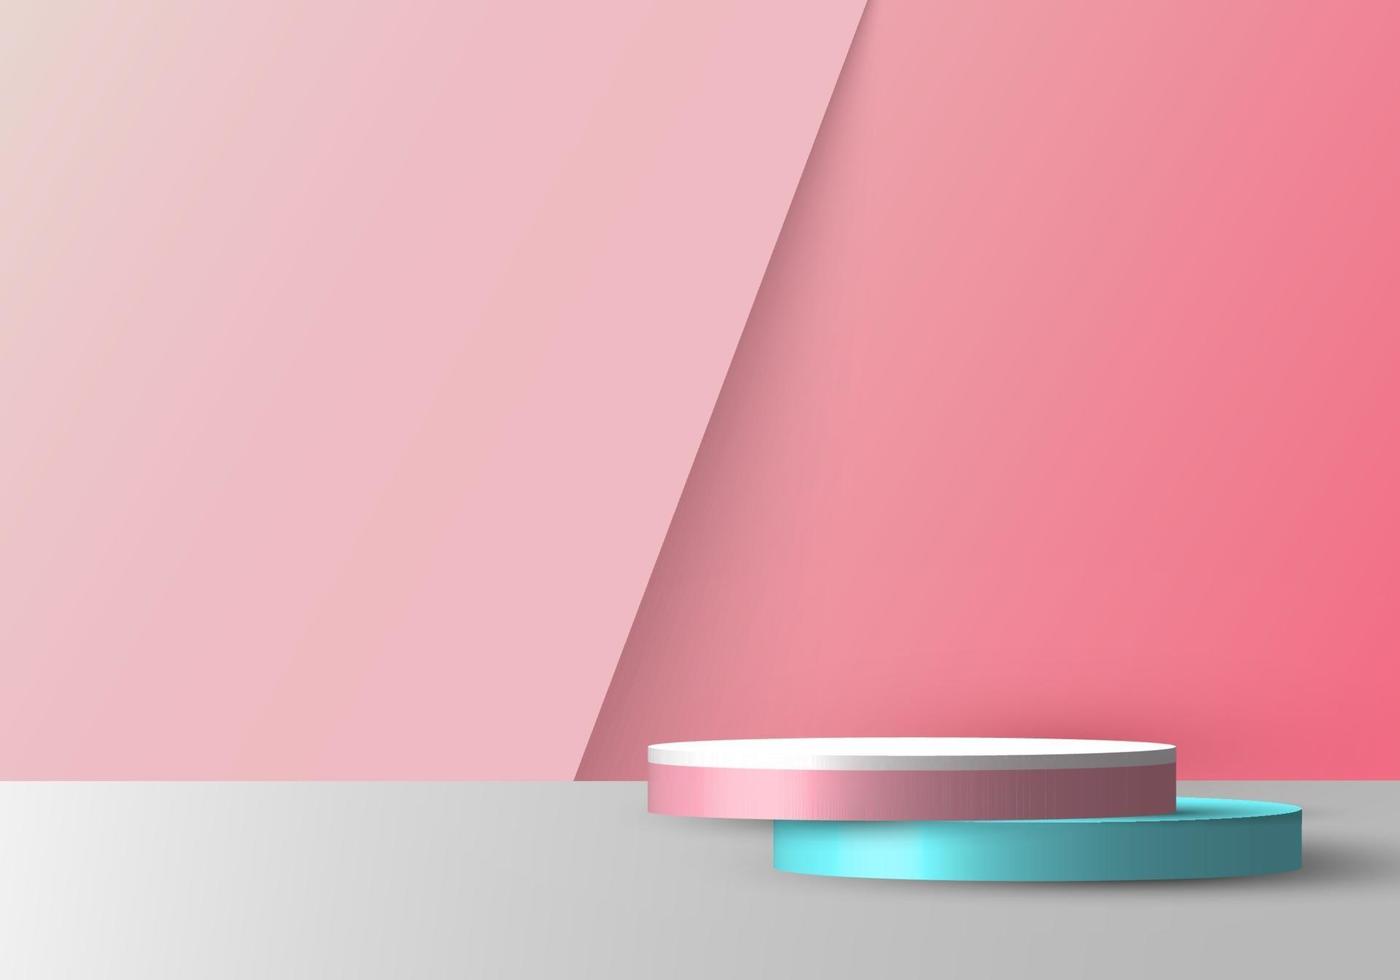 Maqueta de pedestal redondo rosa, azul y blanco vacía realista 3d superpuesta sobre un fondo rosa suave vector